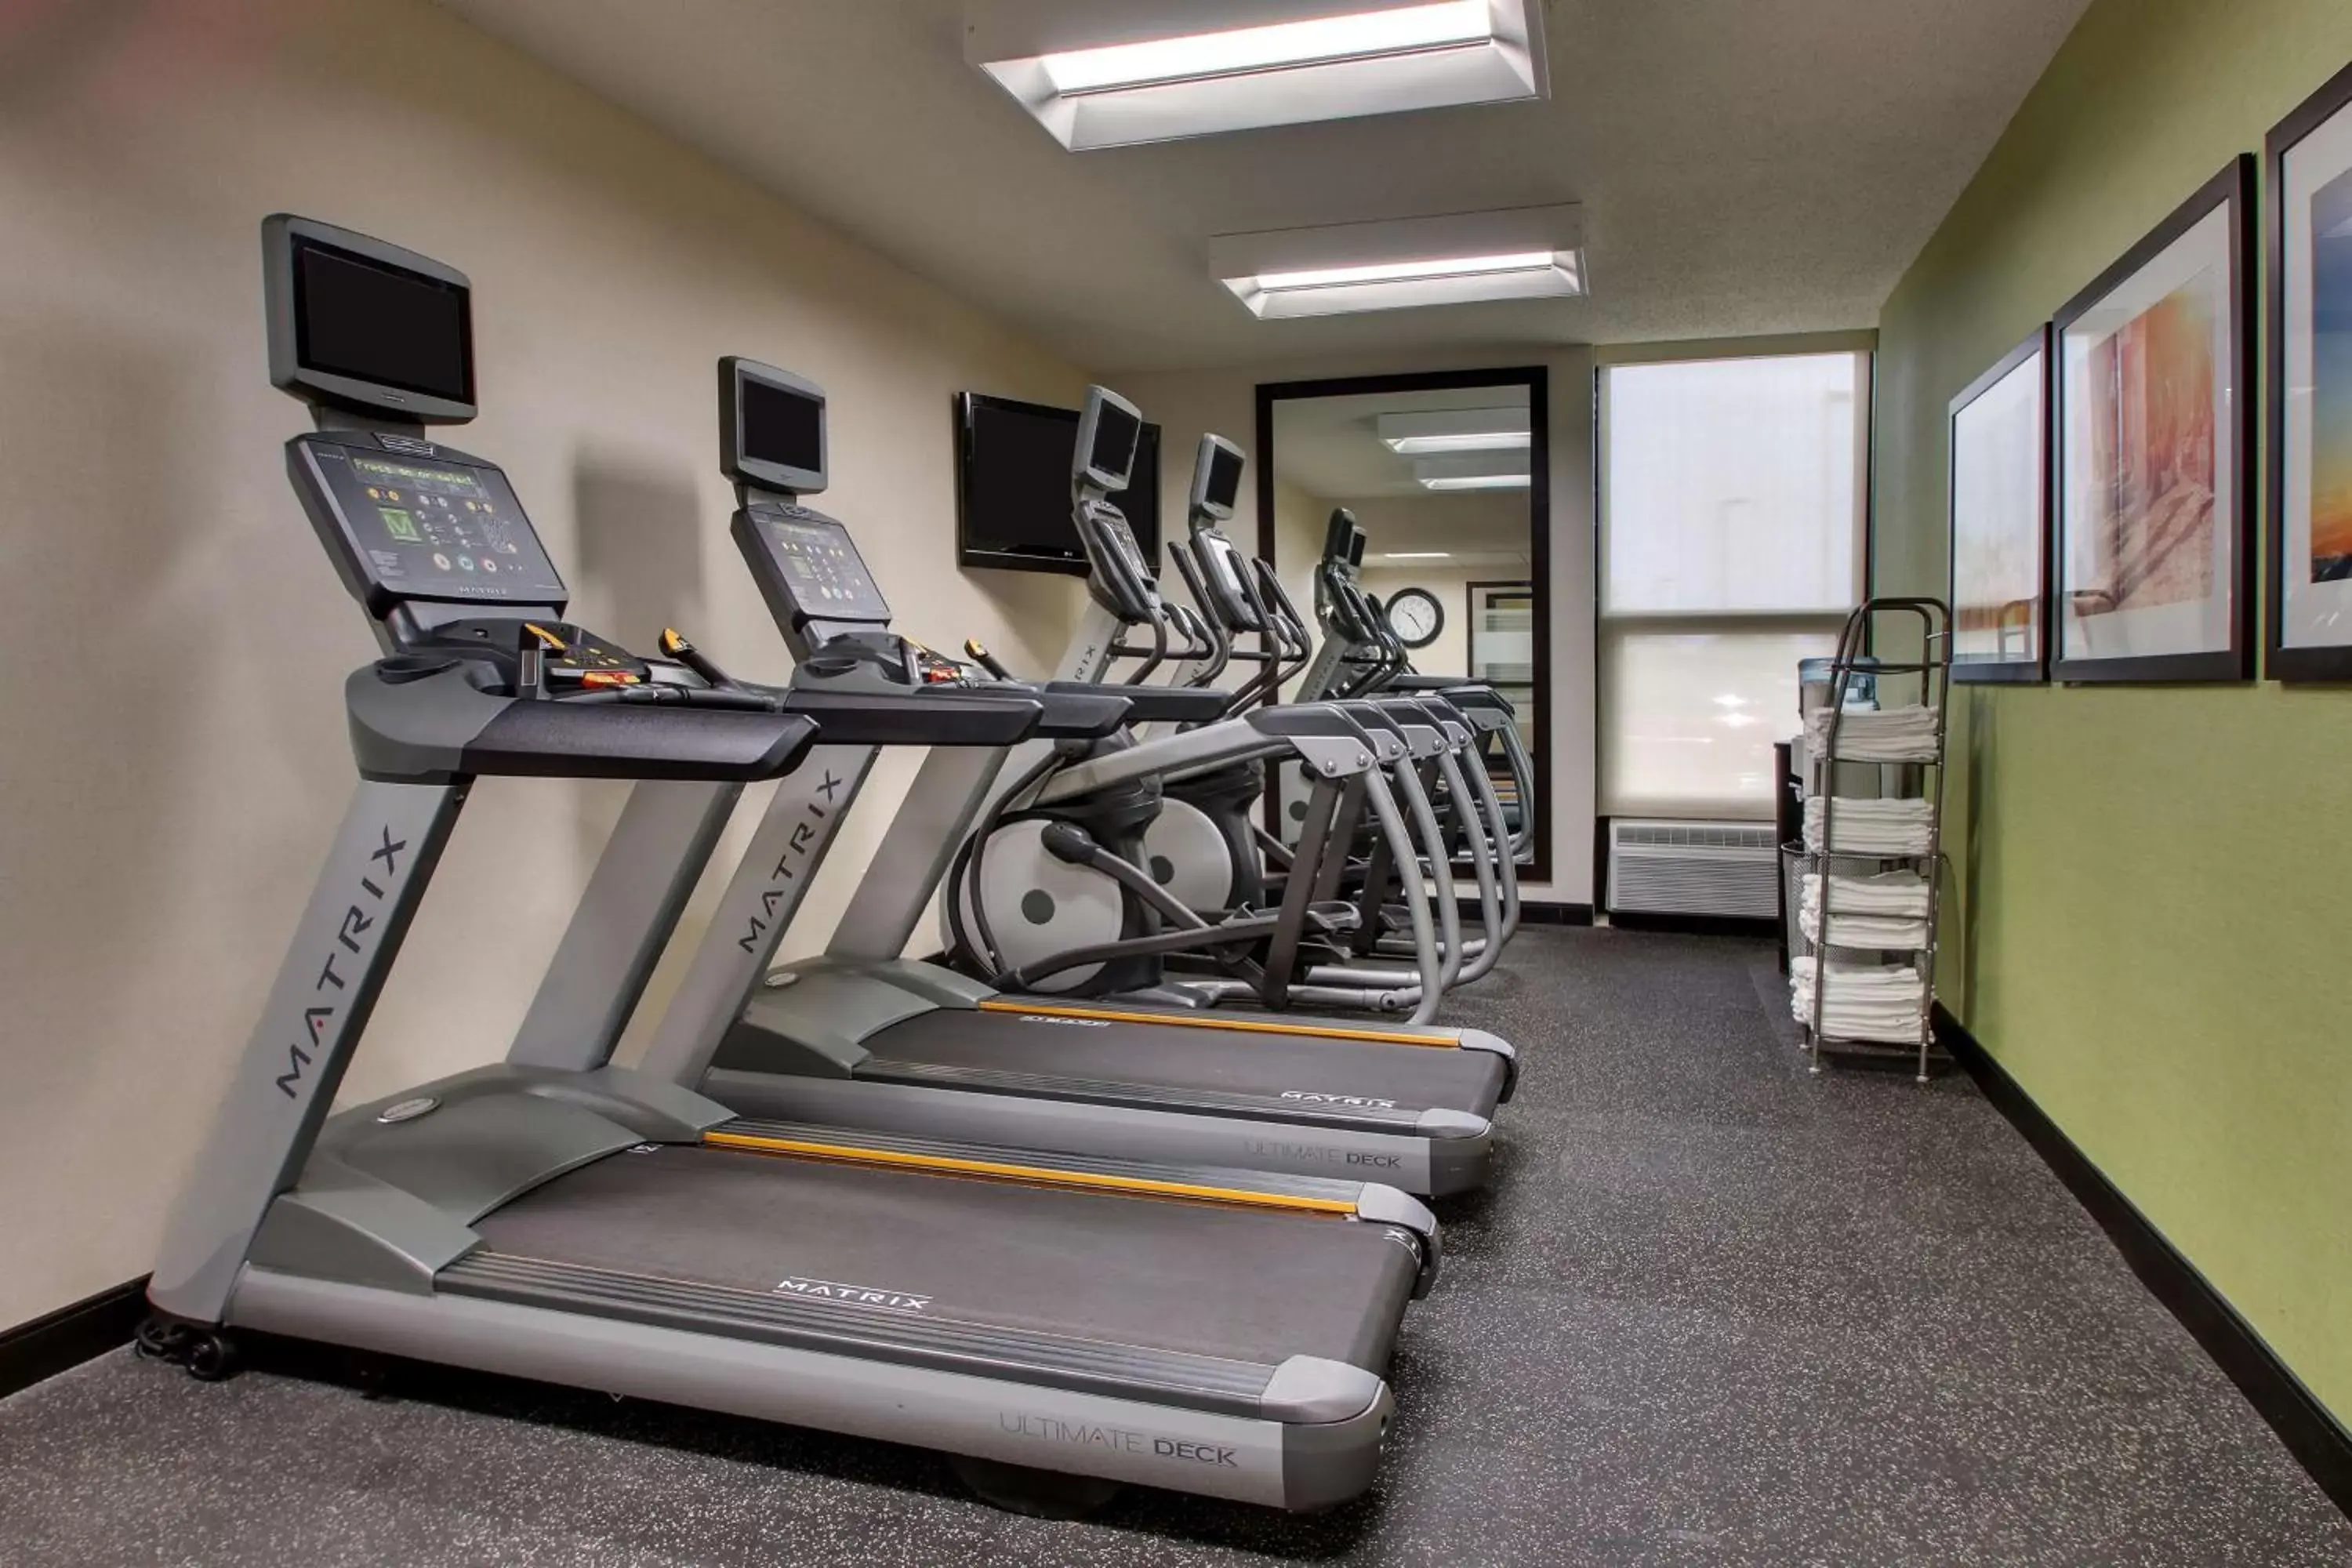 Activities, Fitness Center/Facilities in Drury Inn & Suites Evansville East